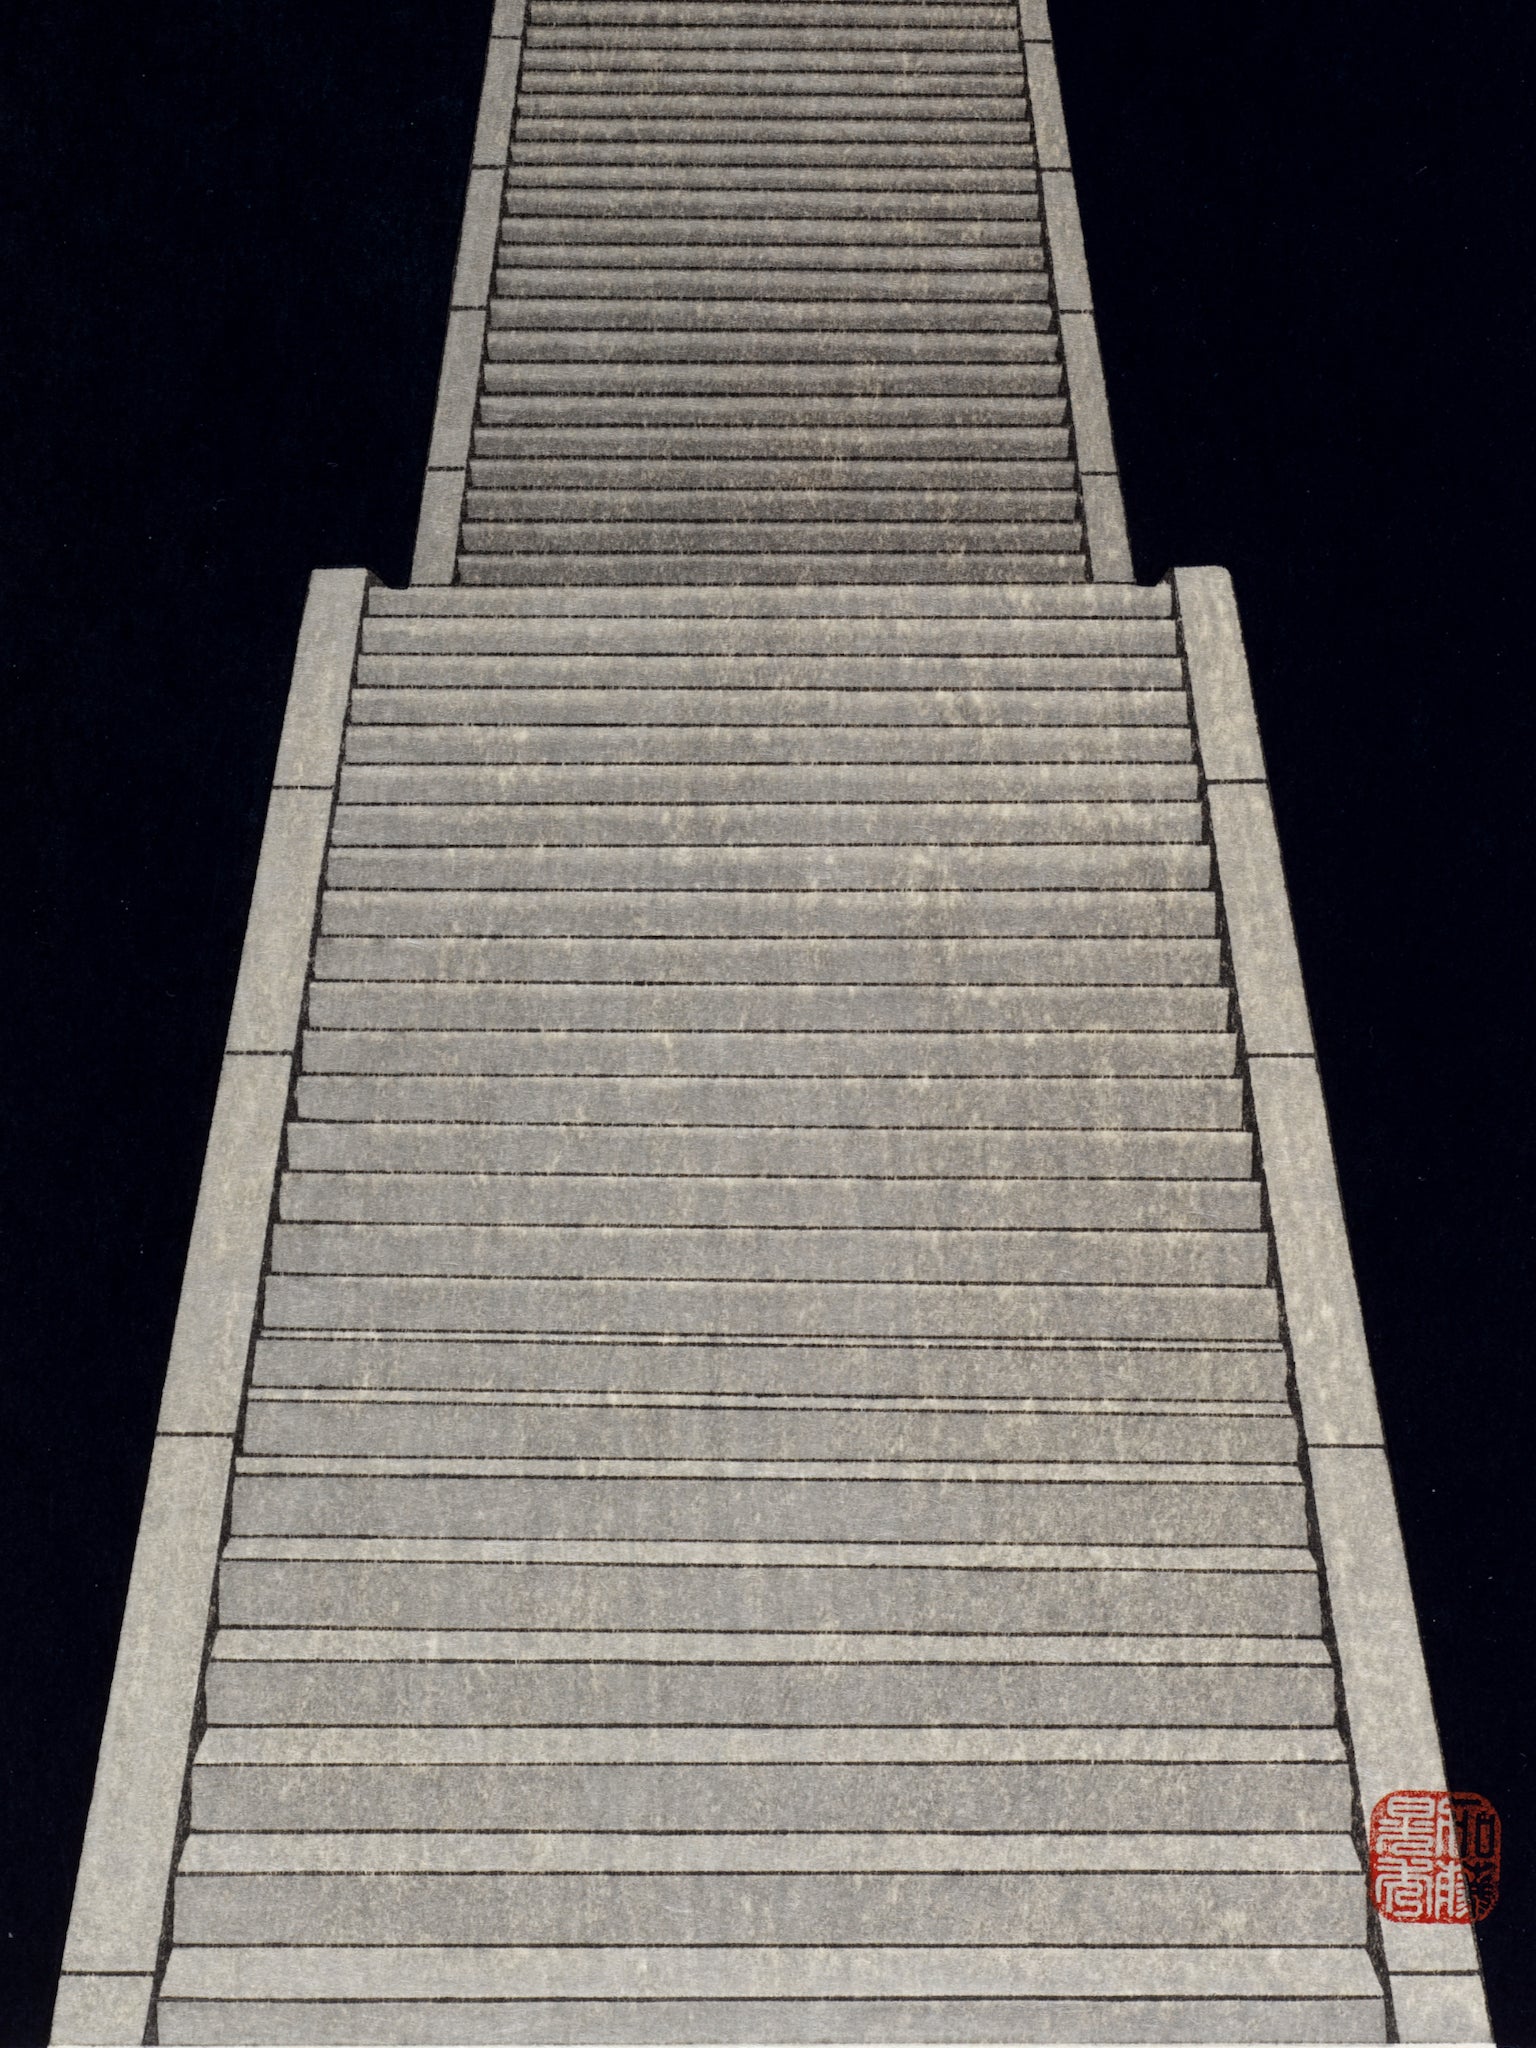 estampe japonaise escalier noir nuit automne pleine lune, sceau artiste